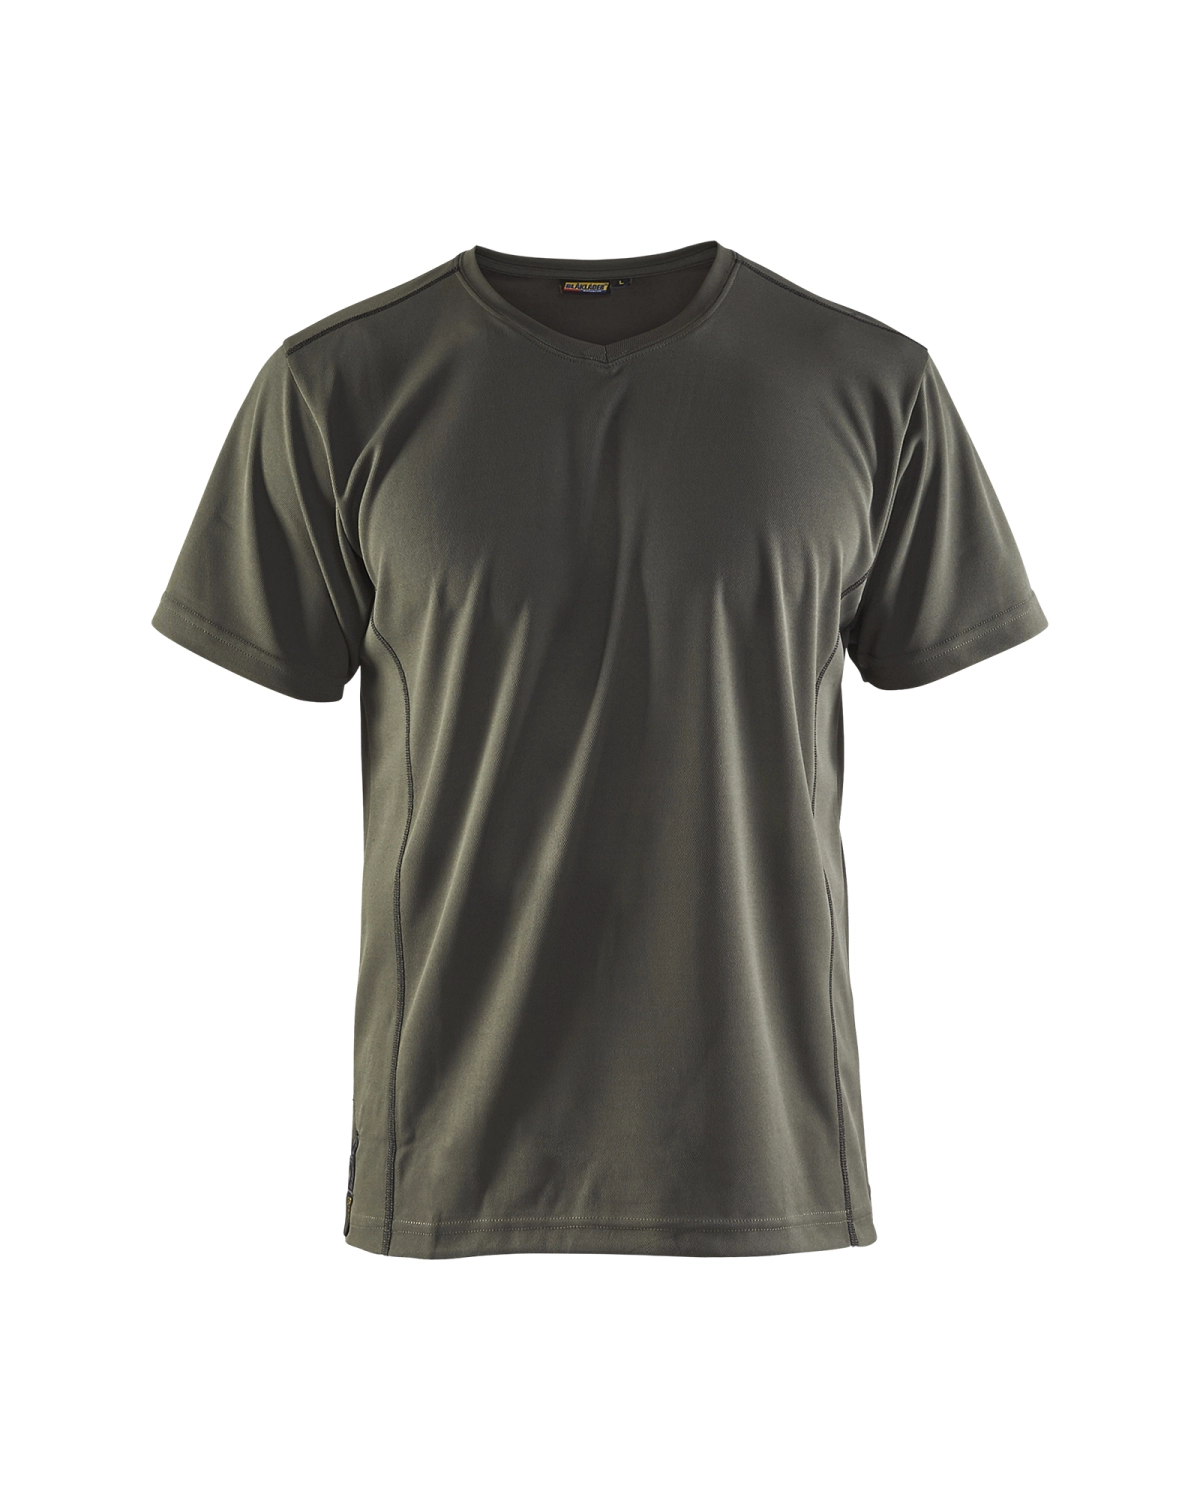 Blåkläder 3323 UV t-shirt - army groen - XXL